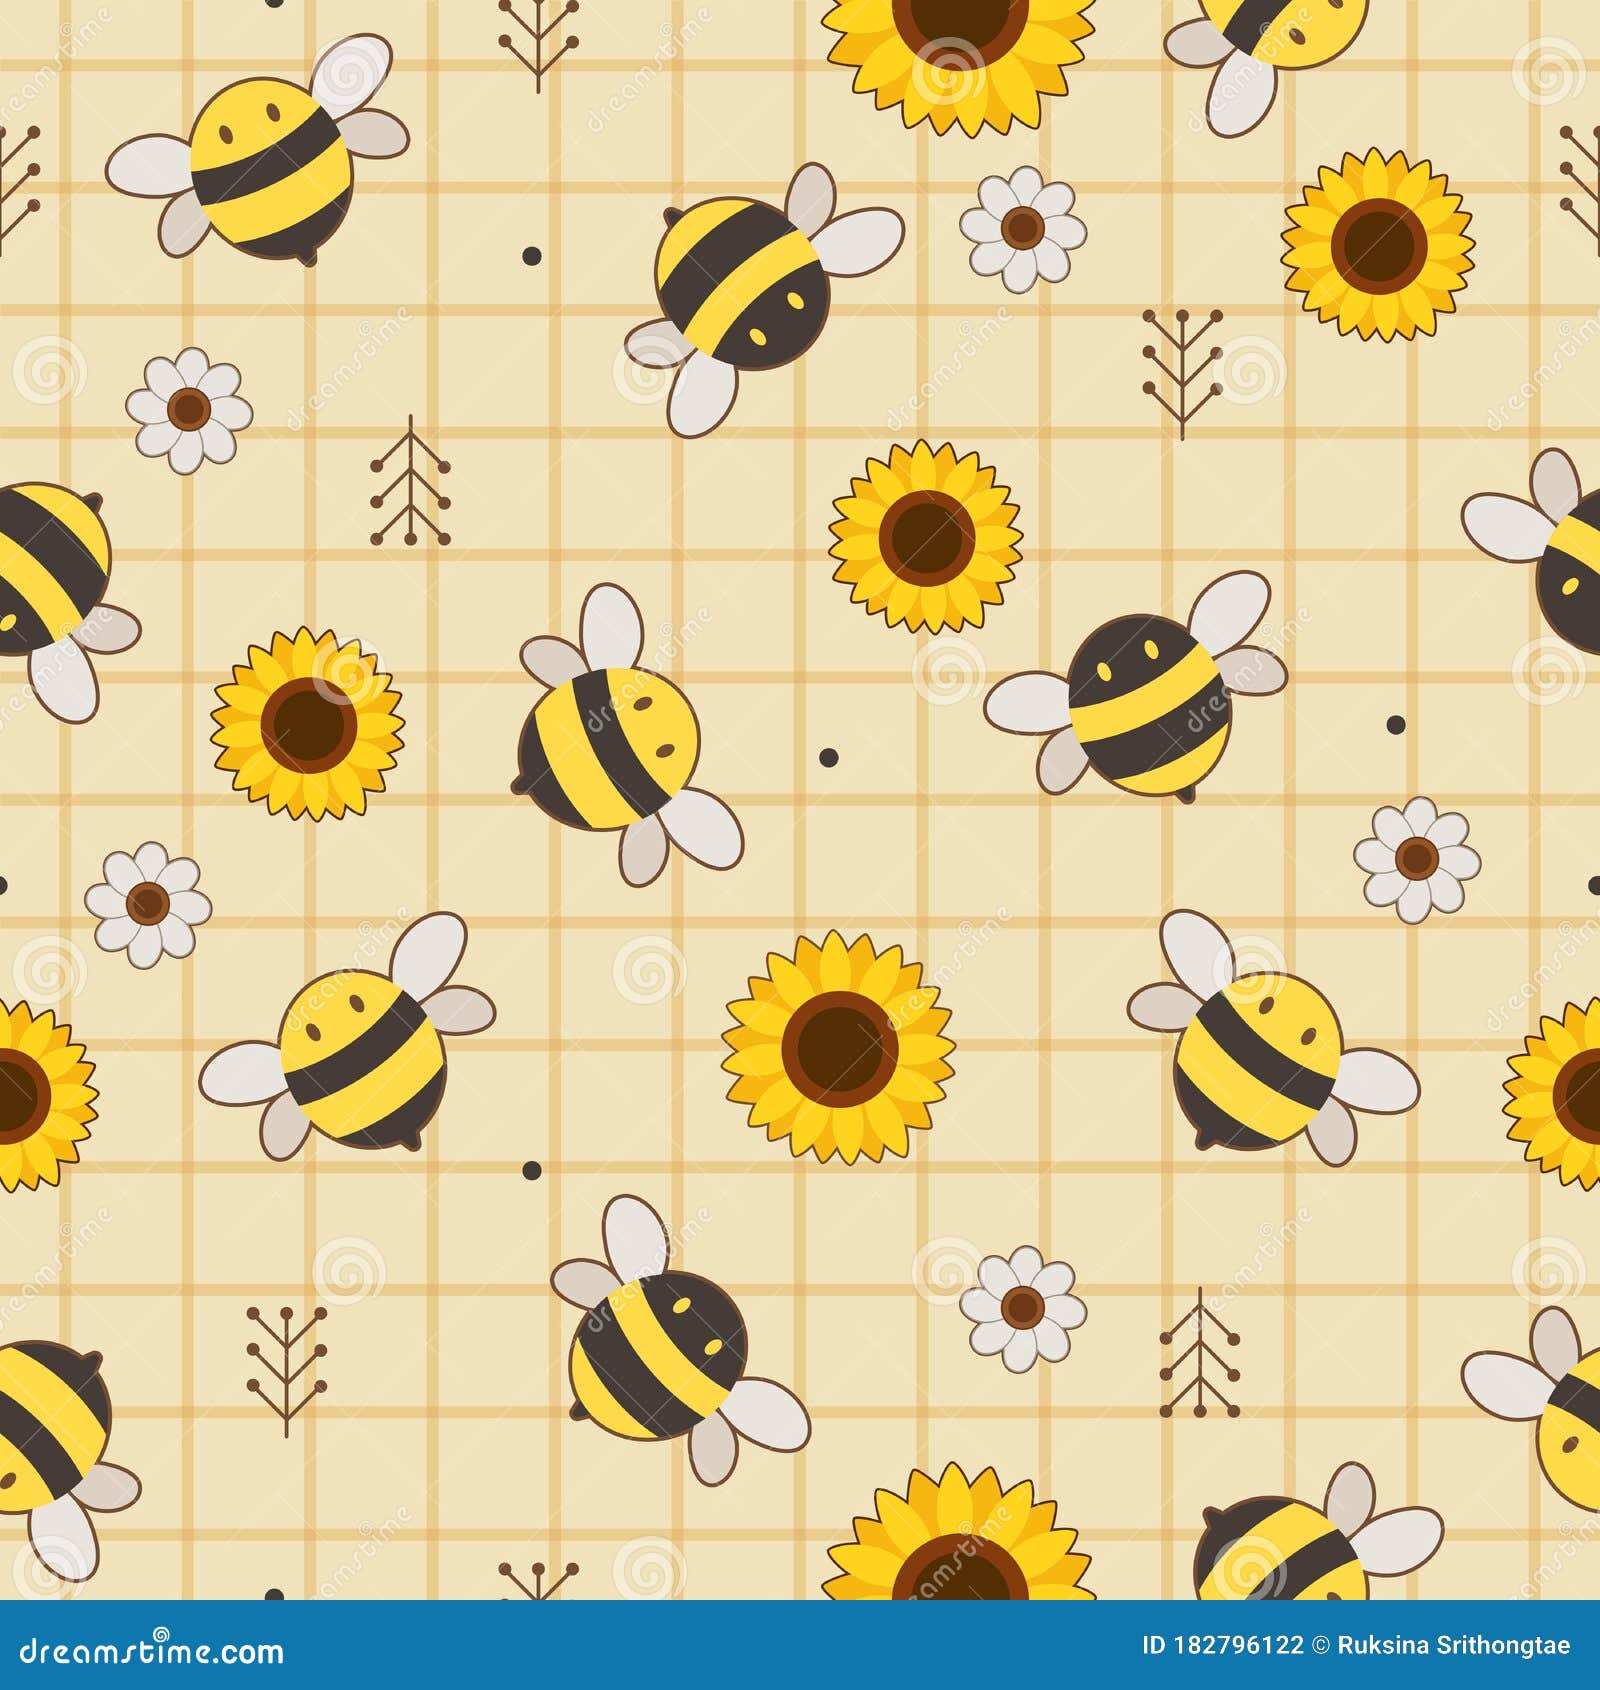 Bạn yêu thiên nhiên mùa hè với màu sắc của hoa và ong? Bức ảnh với mẫu hoa hướng dương và kiến sẽ khiến bạn xao xuyến với những họa tiết tuyệt đẹp. Hãy tạo sự mới mẻ cho màn hình máy tính của mình bằng bức ảnh này, bạn sẽ không thất vọng!